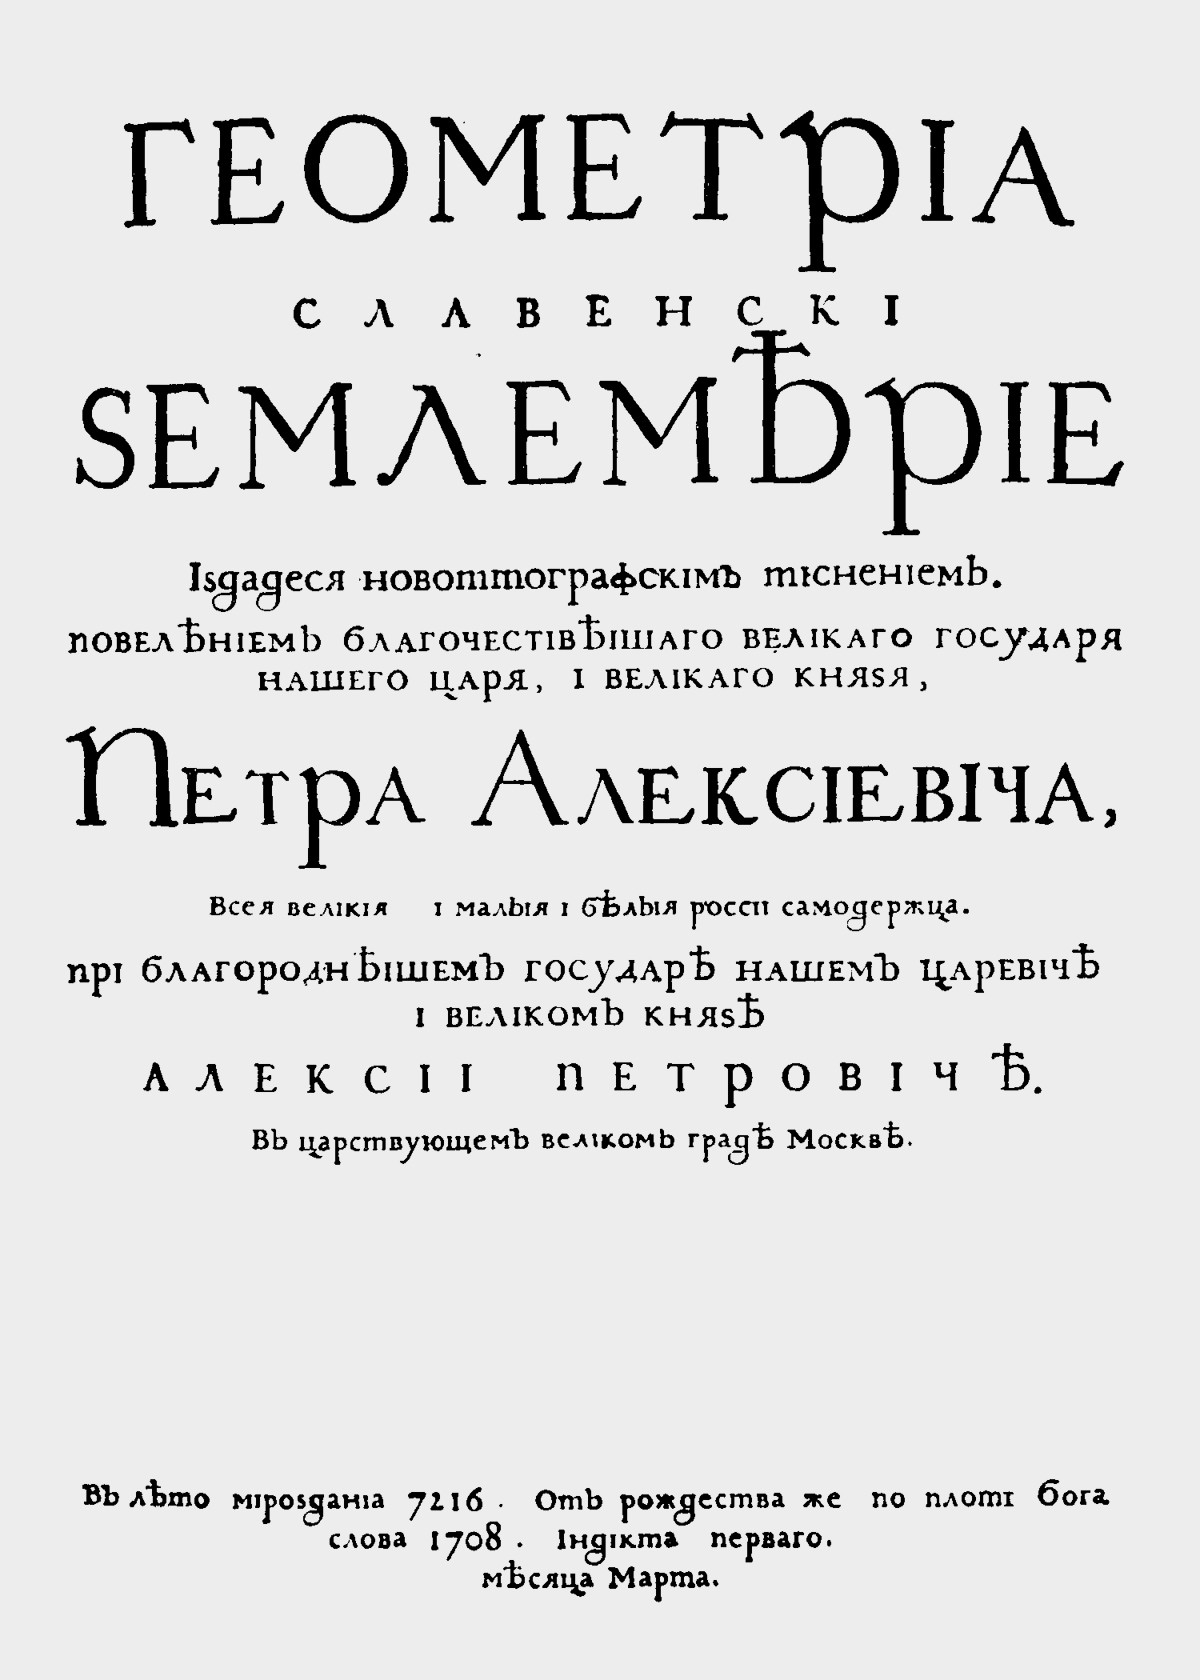 „Геометриа славенски землемерие“, прва руска књига одштампана словима грађанске азбуке.